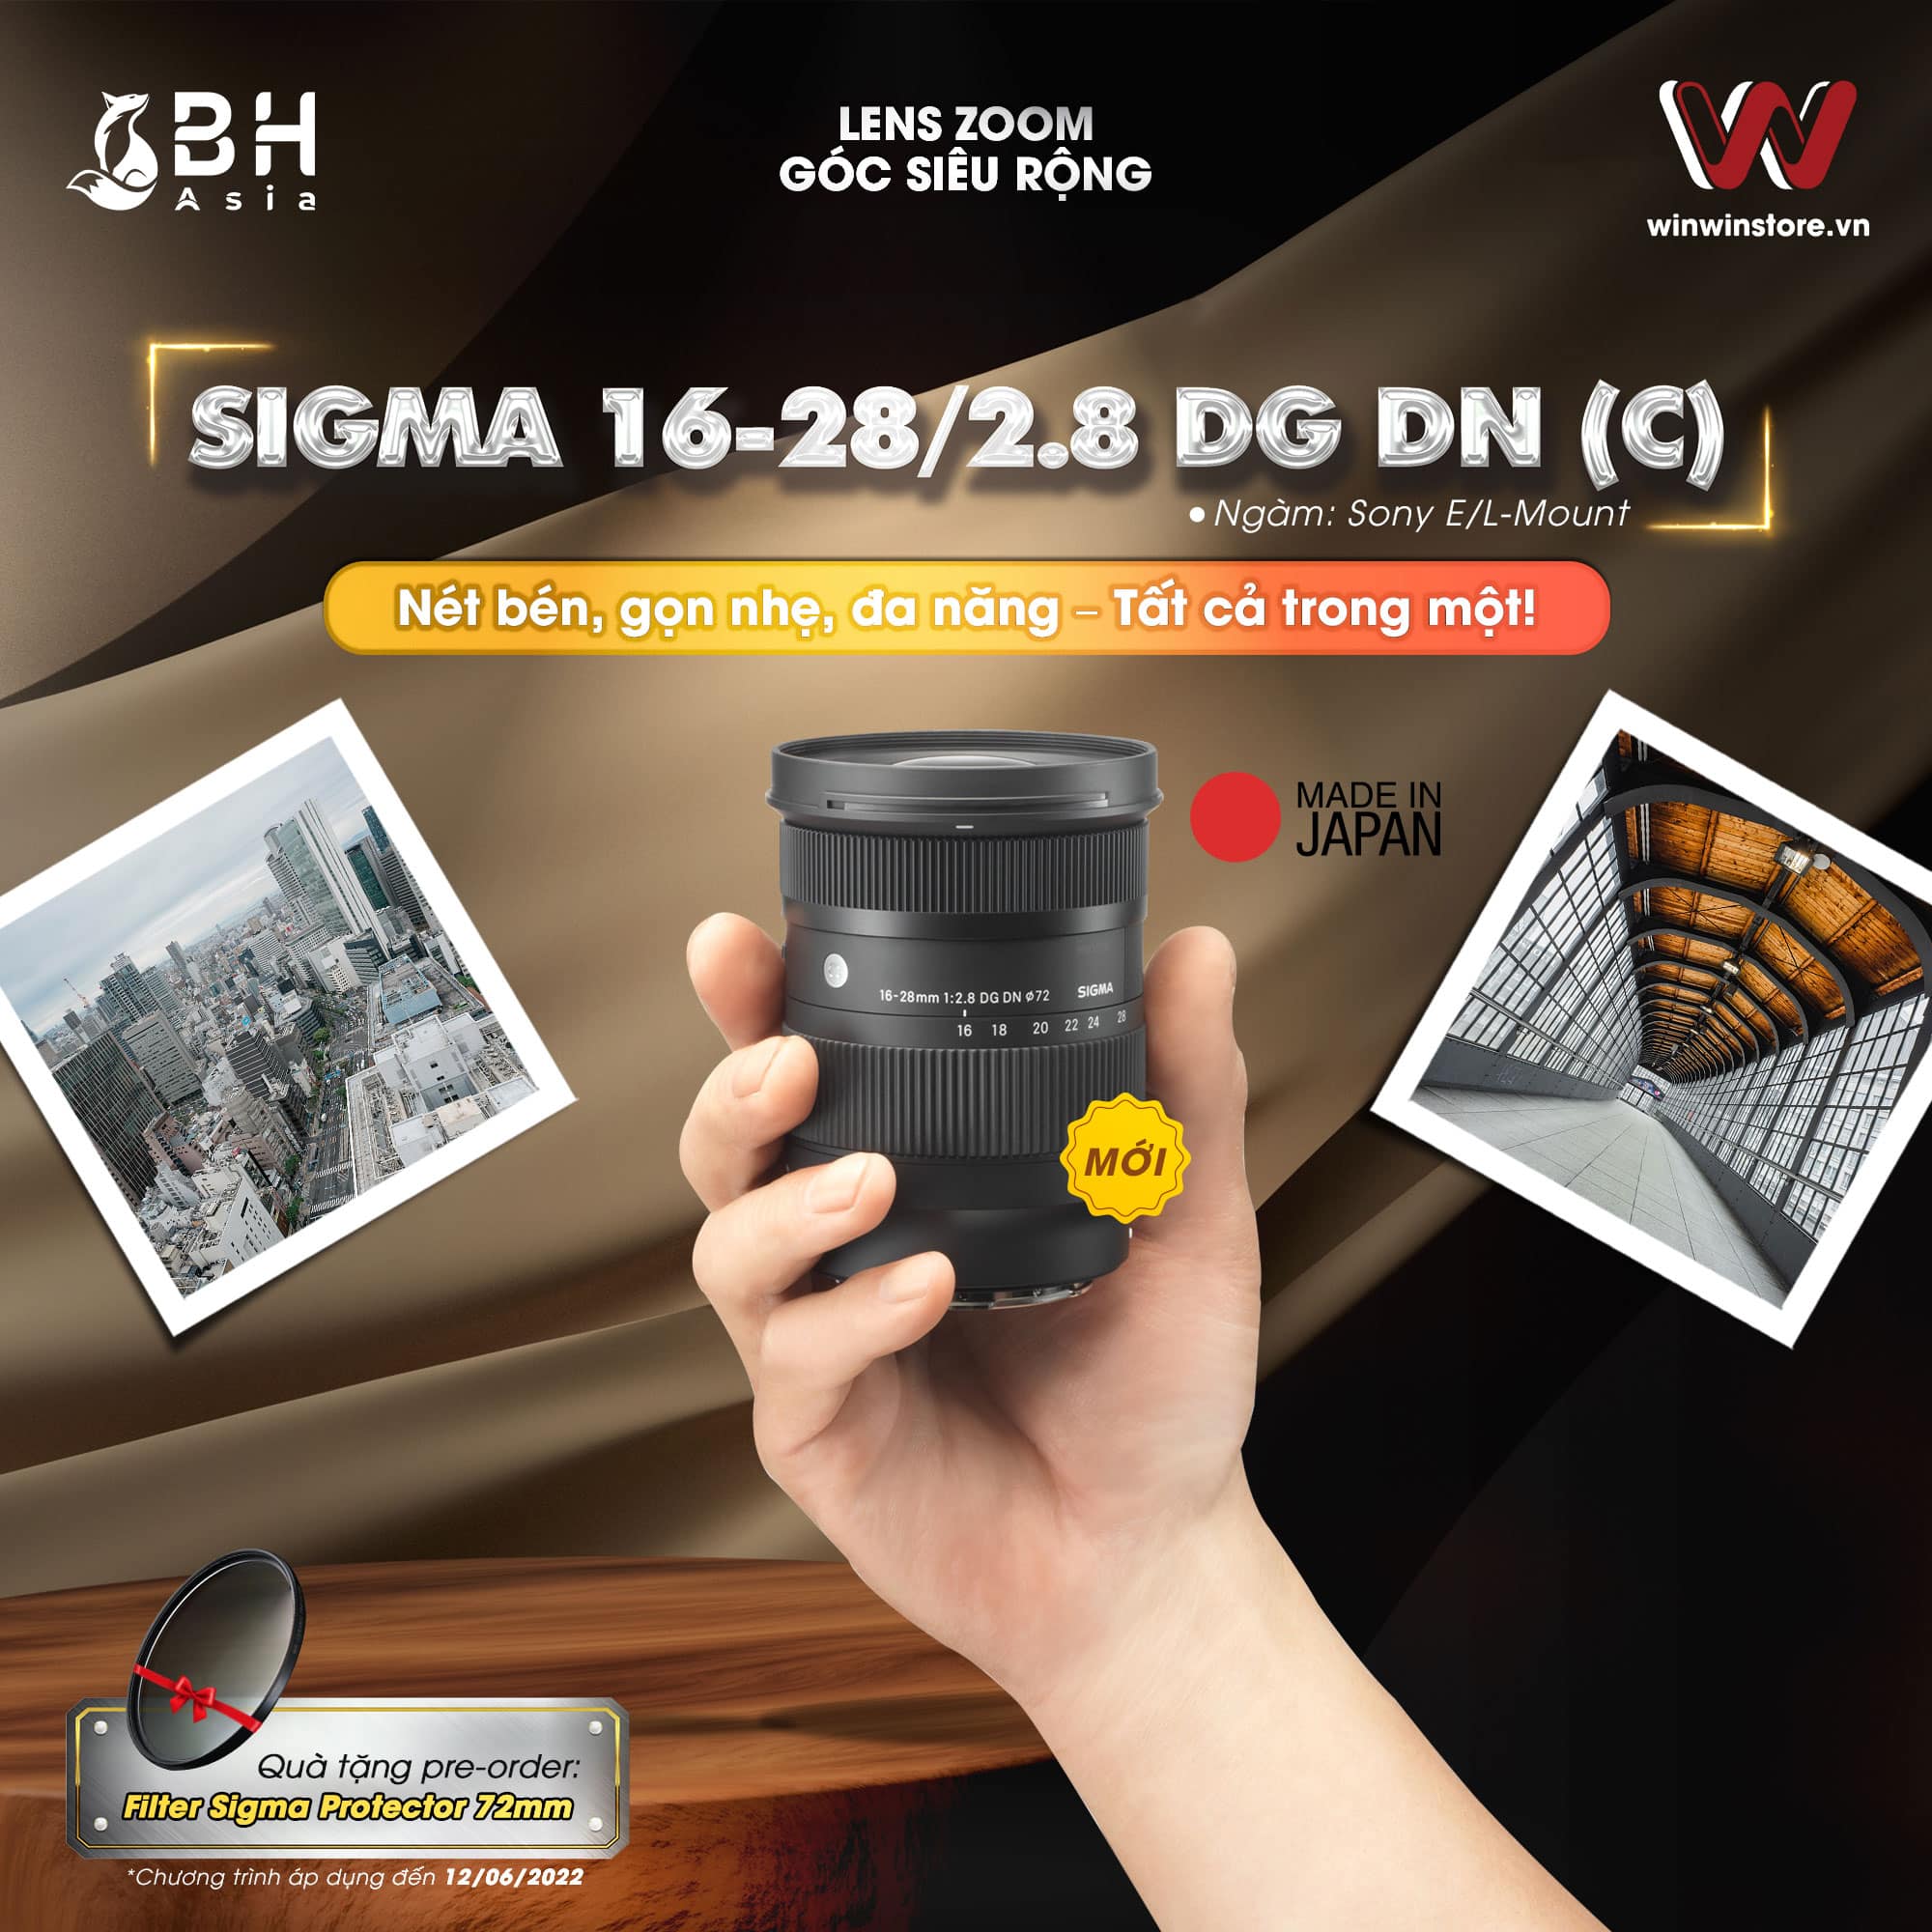 Đặt trước ống kính Sigma 16-28mm F2.8 DG DN | C mới, tặng kèm filter bảo vệ